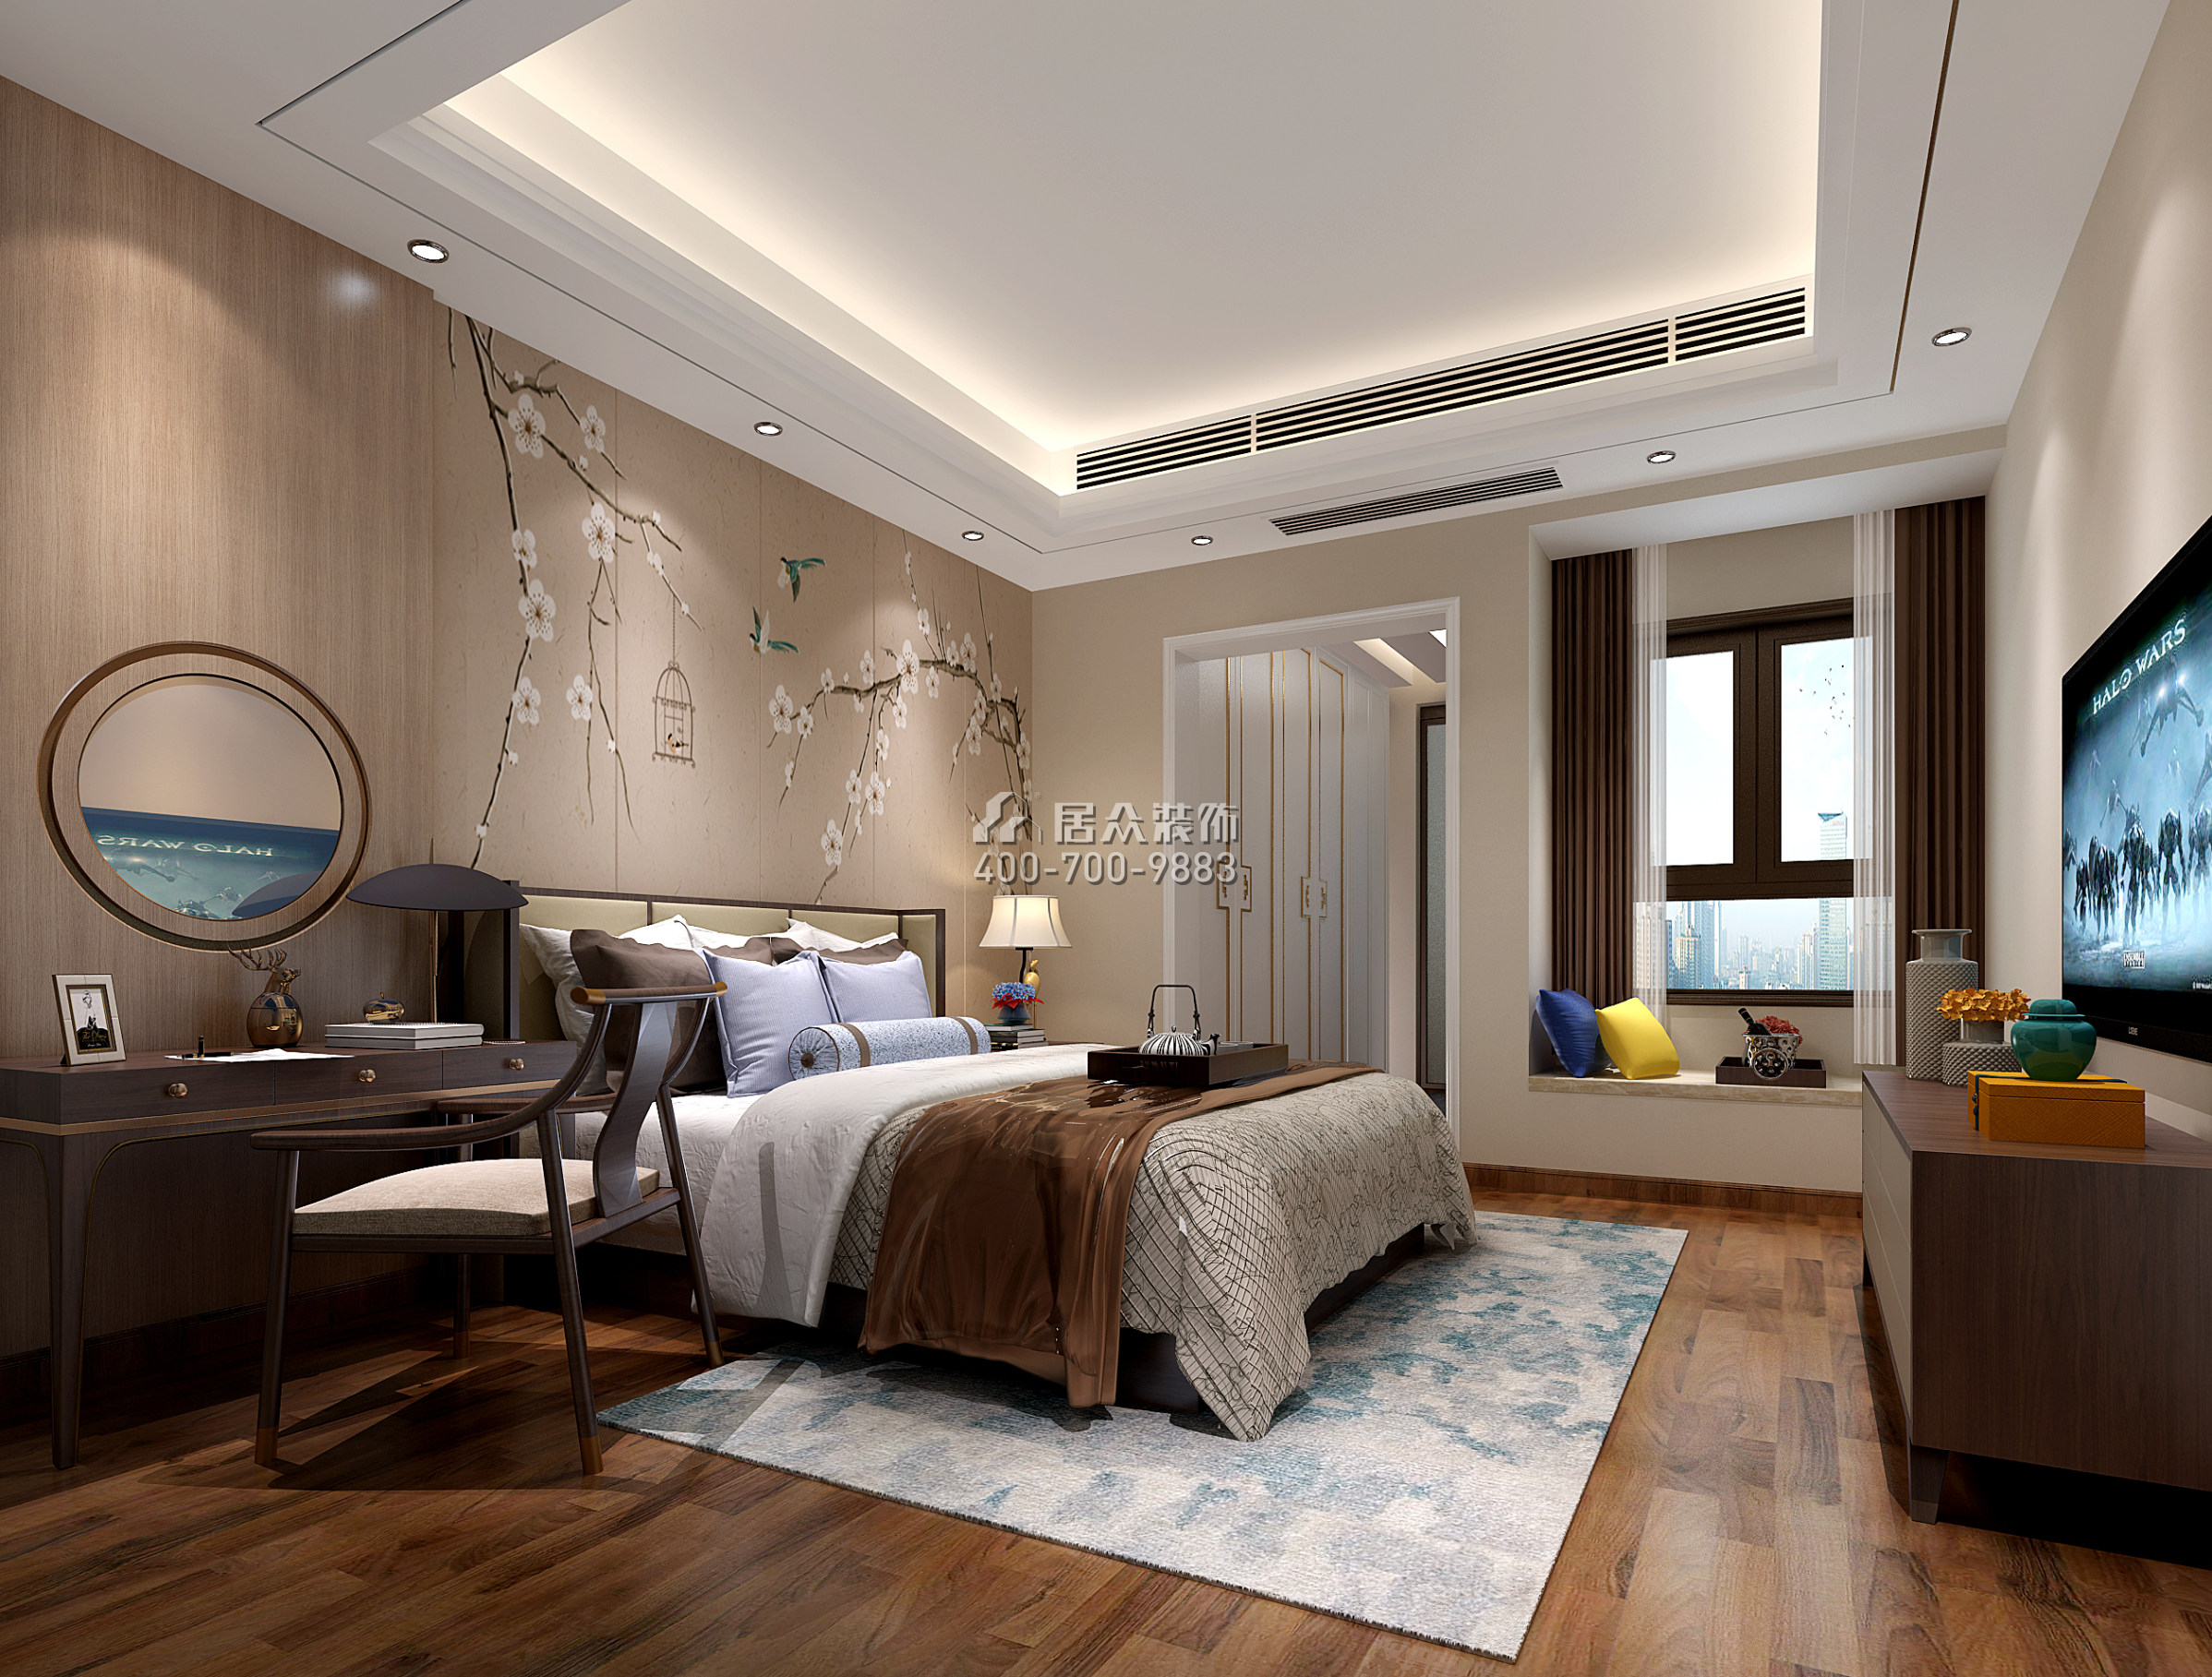 星河丹堤242平方米中式風格復式戶型臥室裝修效果圖